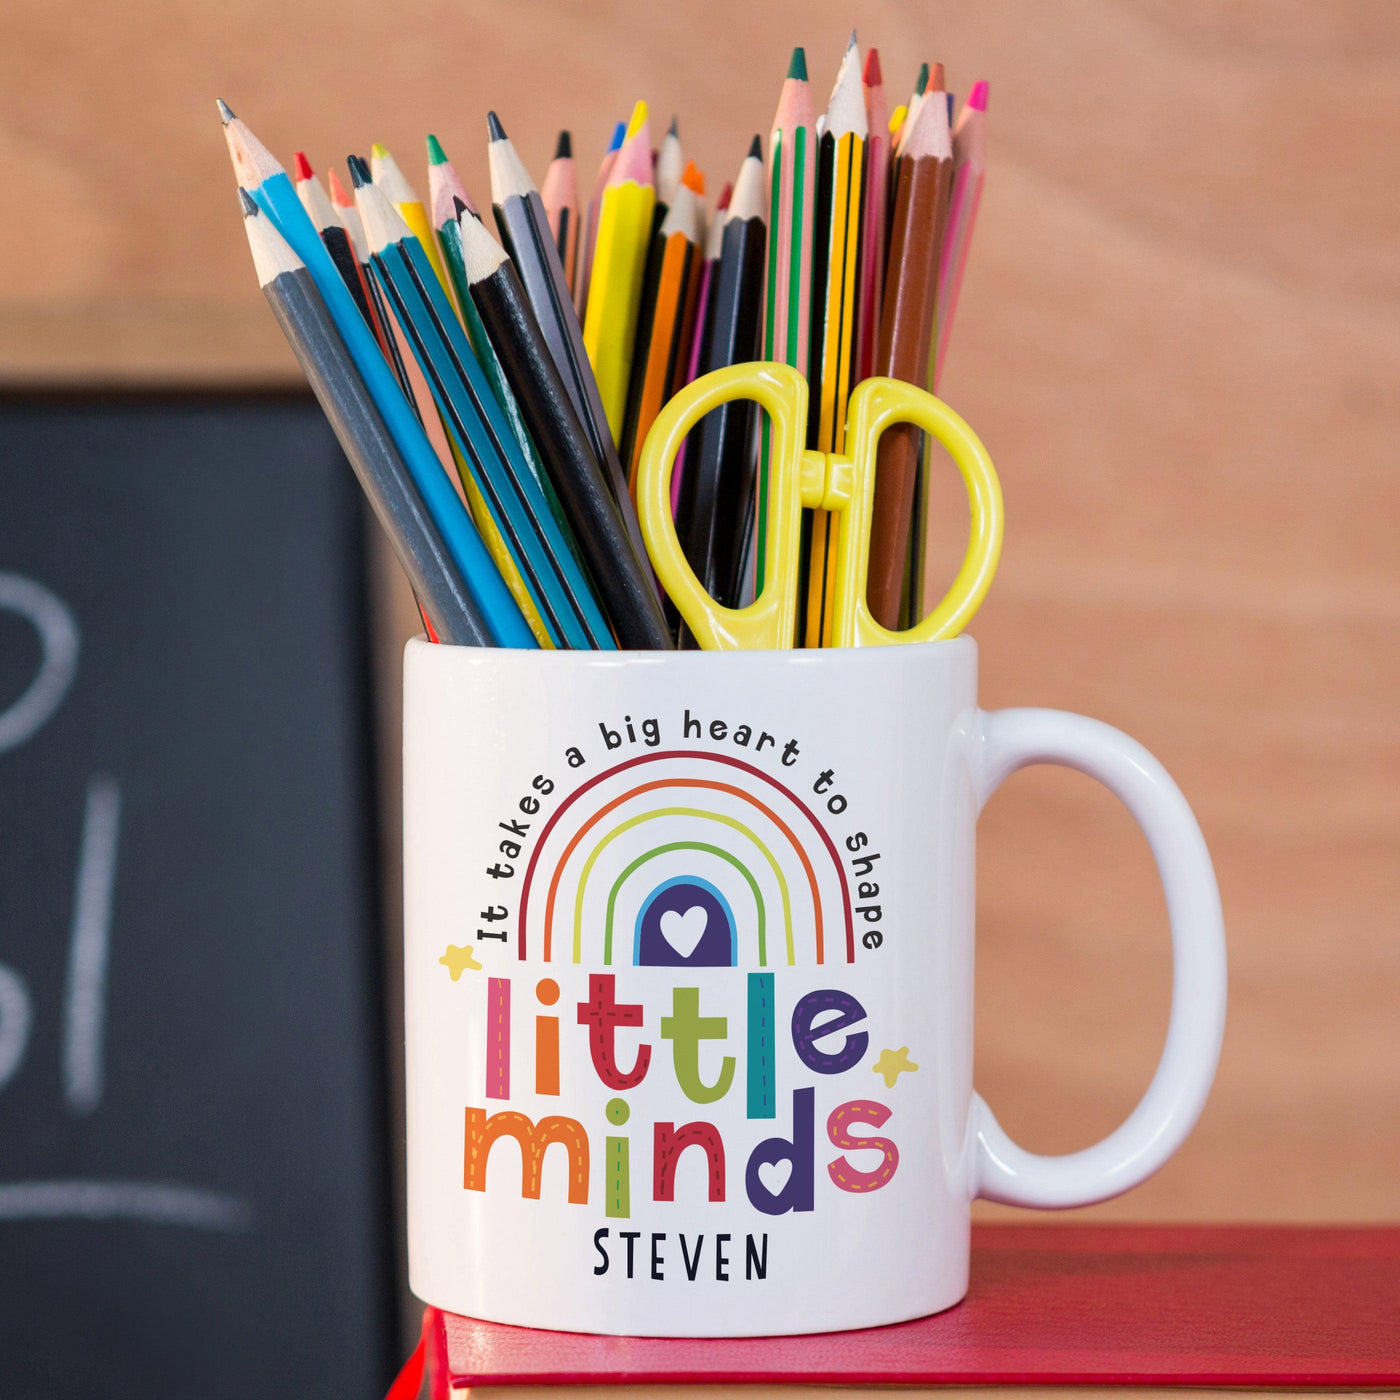 Personalised Shape Little Minds Ceramic Mug - Shop Personalised Gifts